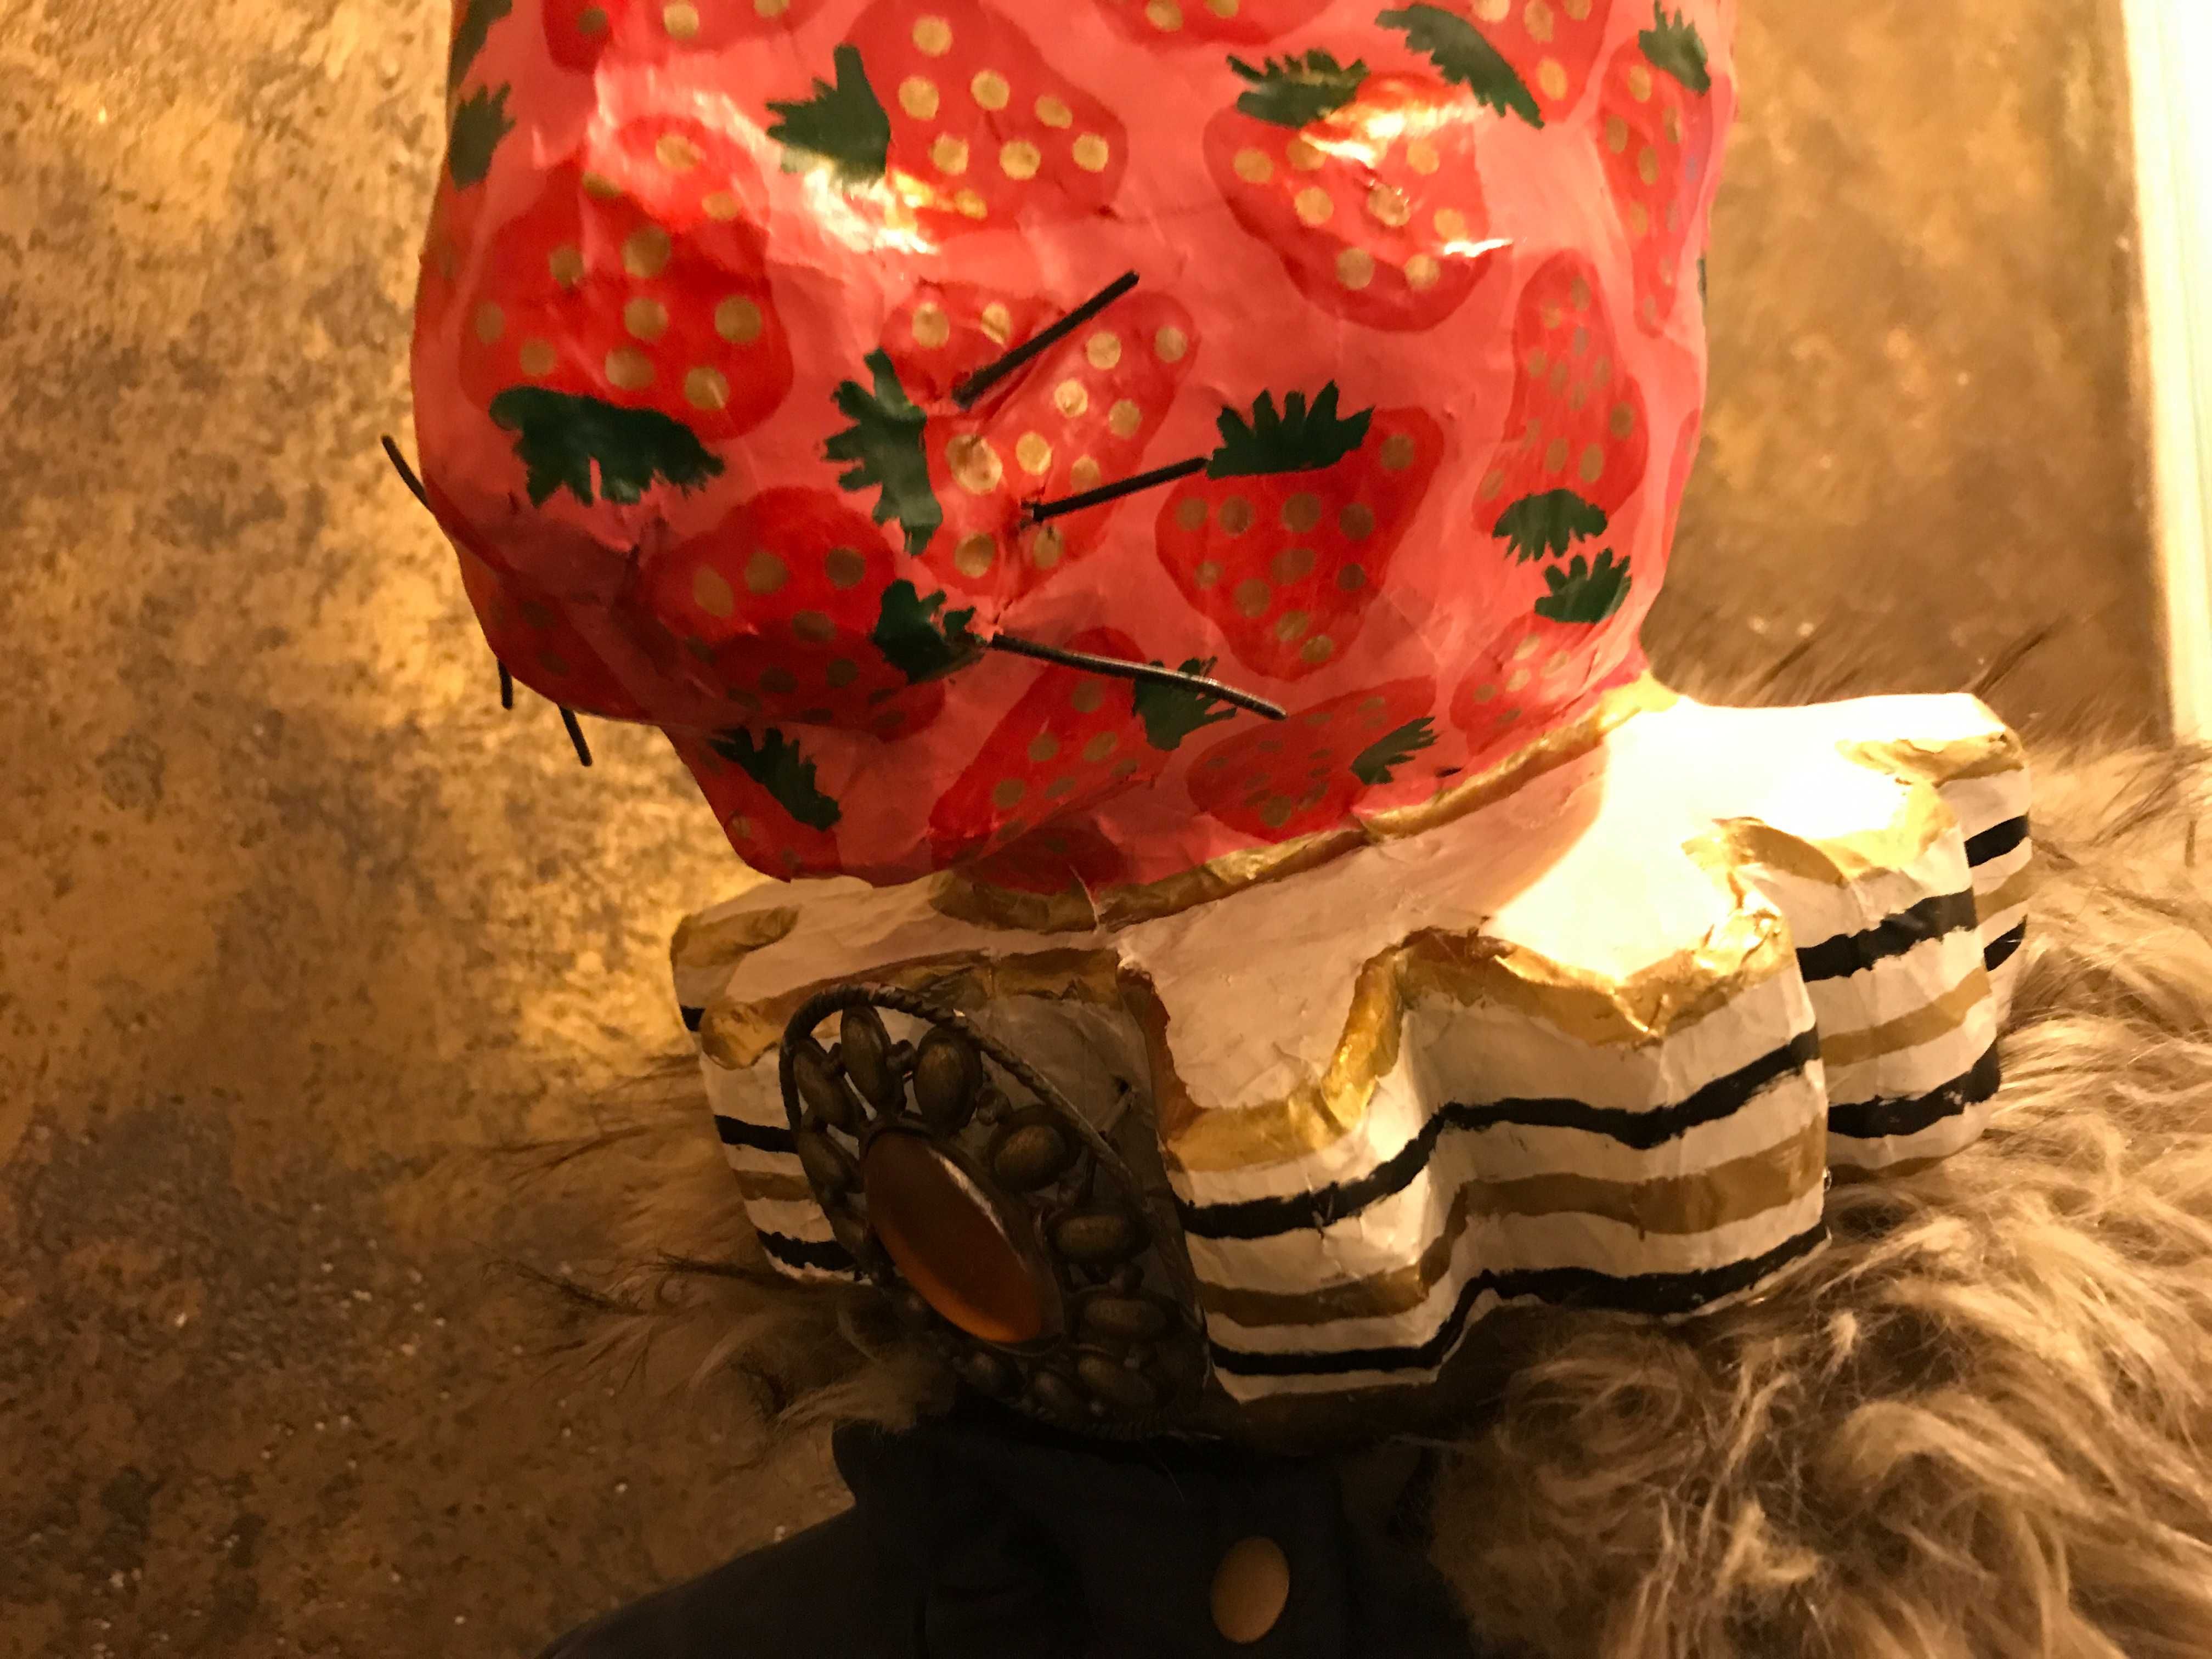 Глава за манекен заек декорация за магазин фотосесия папие маше